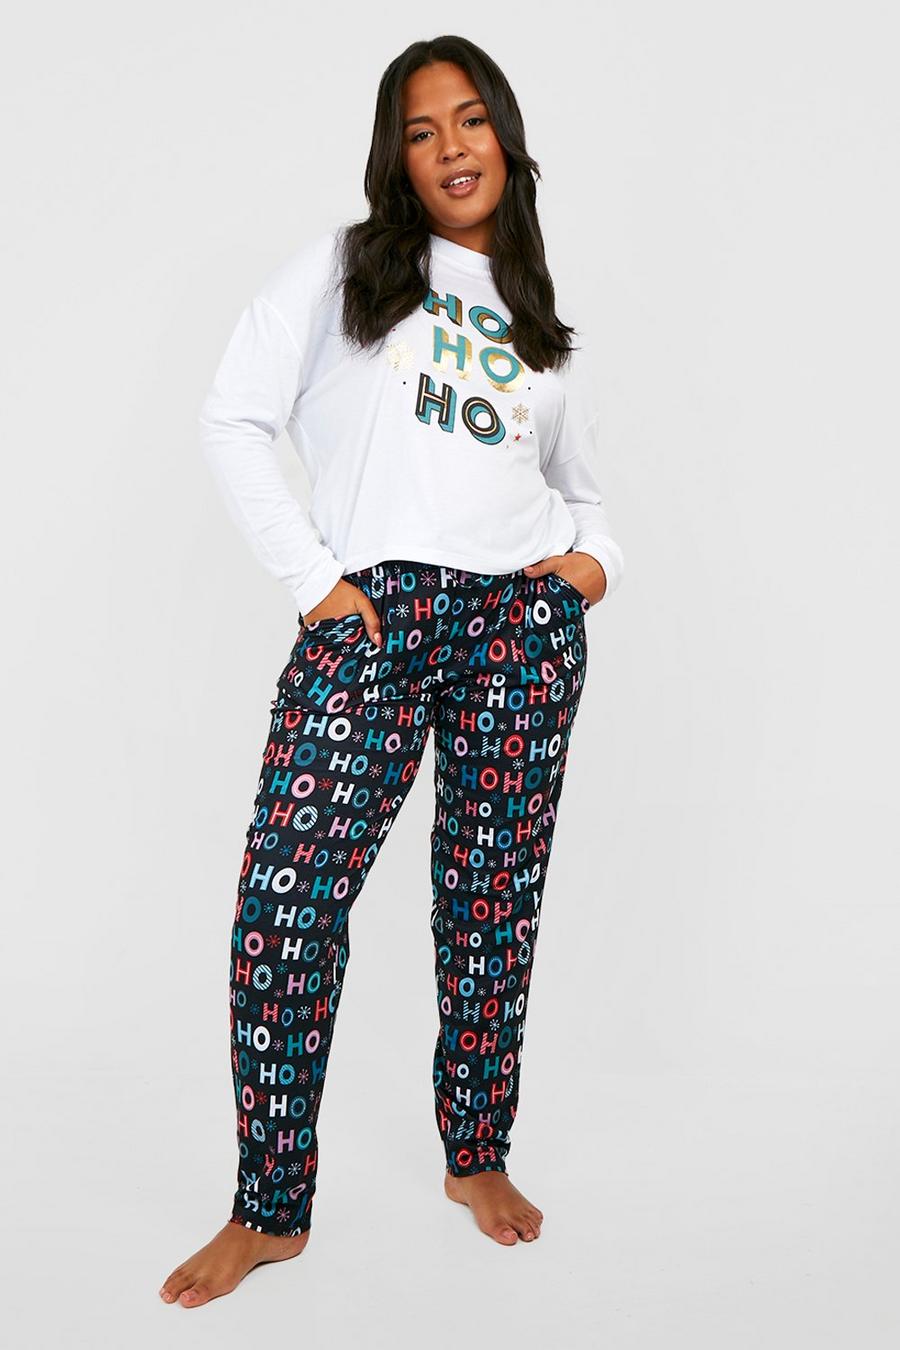 Pijama Plus de pantalón largo con eslogan Ho Ho Ho, White blanco